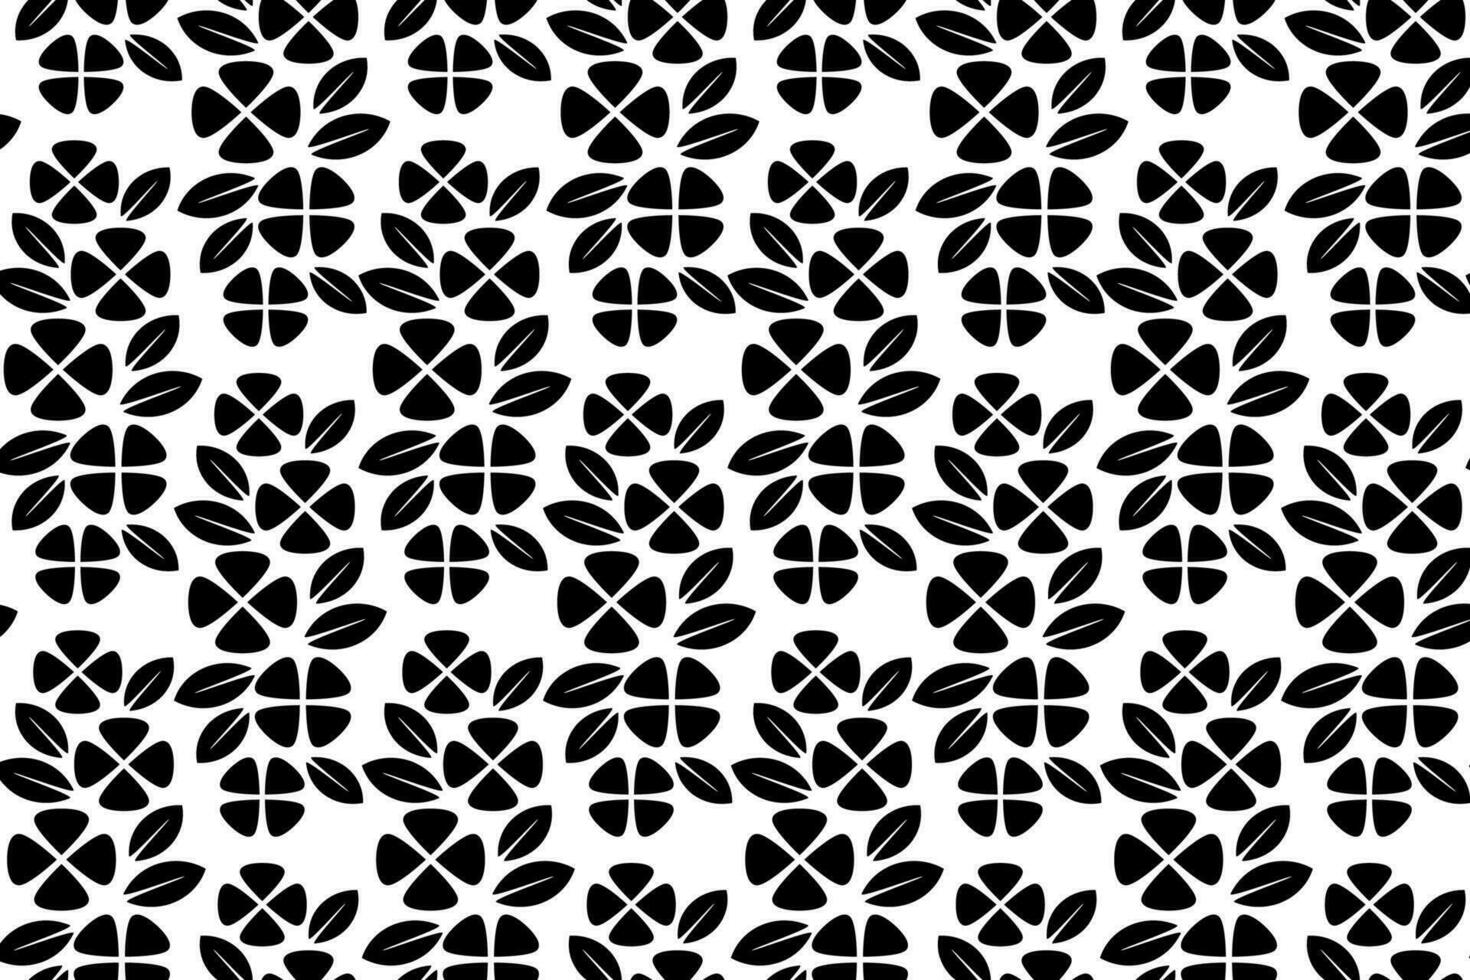 abstrakt Blumen- nahtlos Muster. schwarz und Weiß stilisiert, dekorativ Design. endlos wiederholen einfarbig Muster mit eben Blumen- Design Elemente. vektor